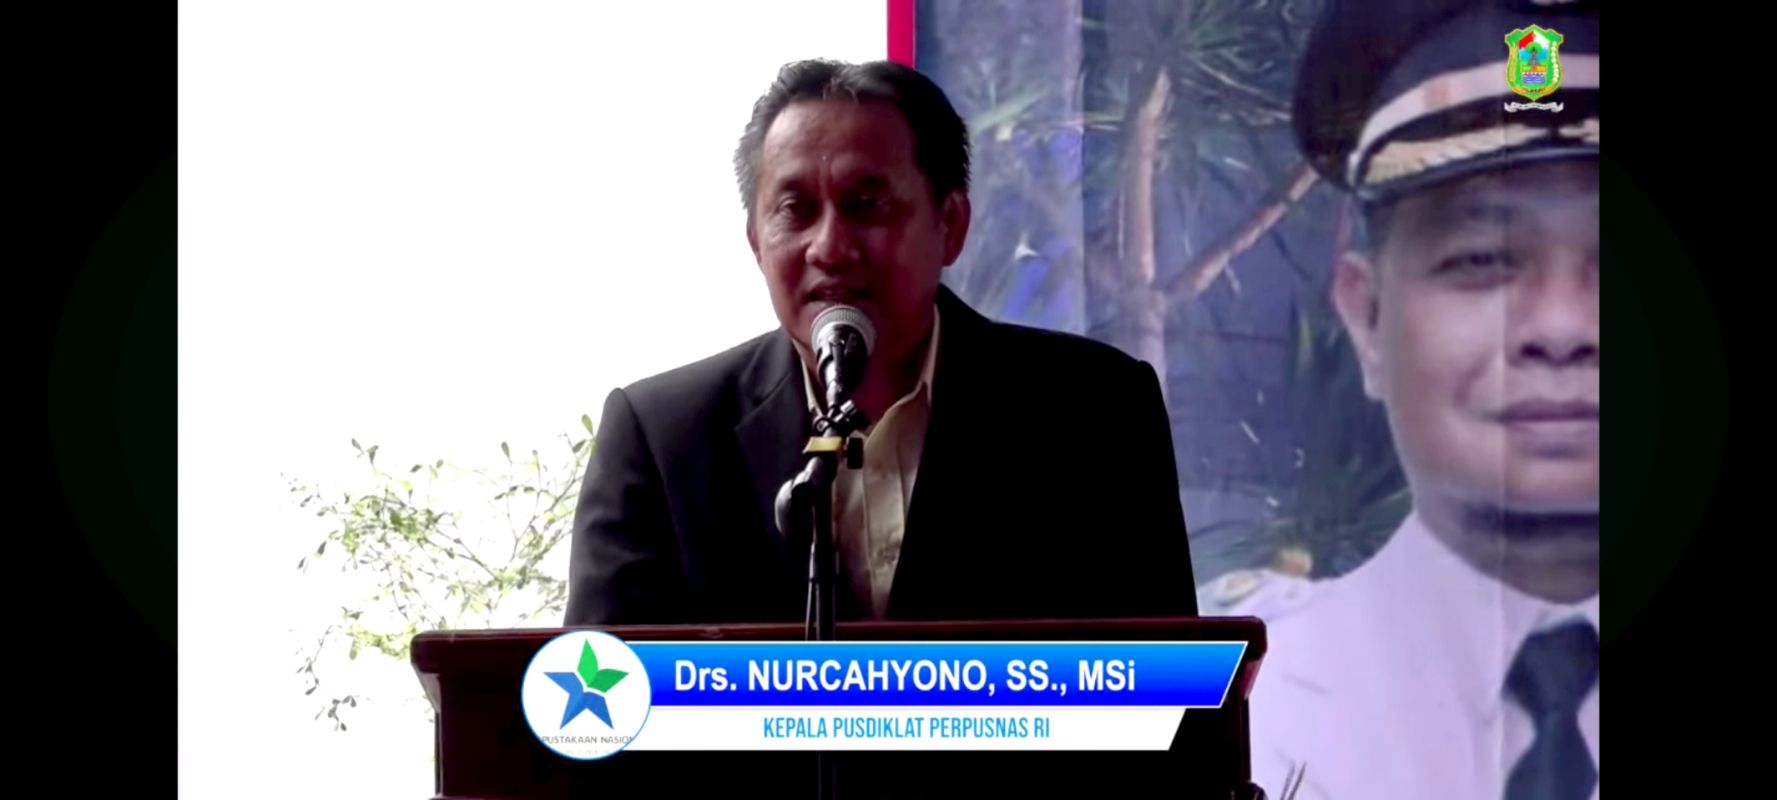 Pidato Drs. Nurcahyono, SS, M.Si dari pusdiklat Perpusnas RI pada peresmian gedung Perpustakaan Banjarnegara